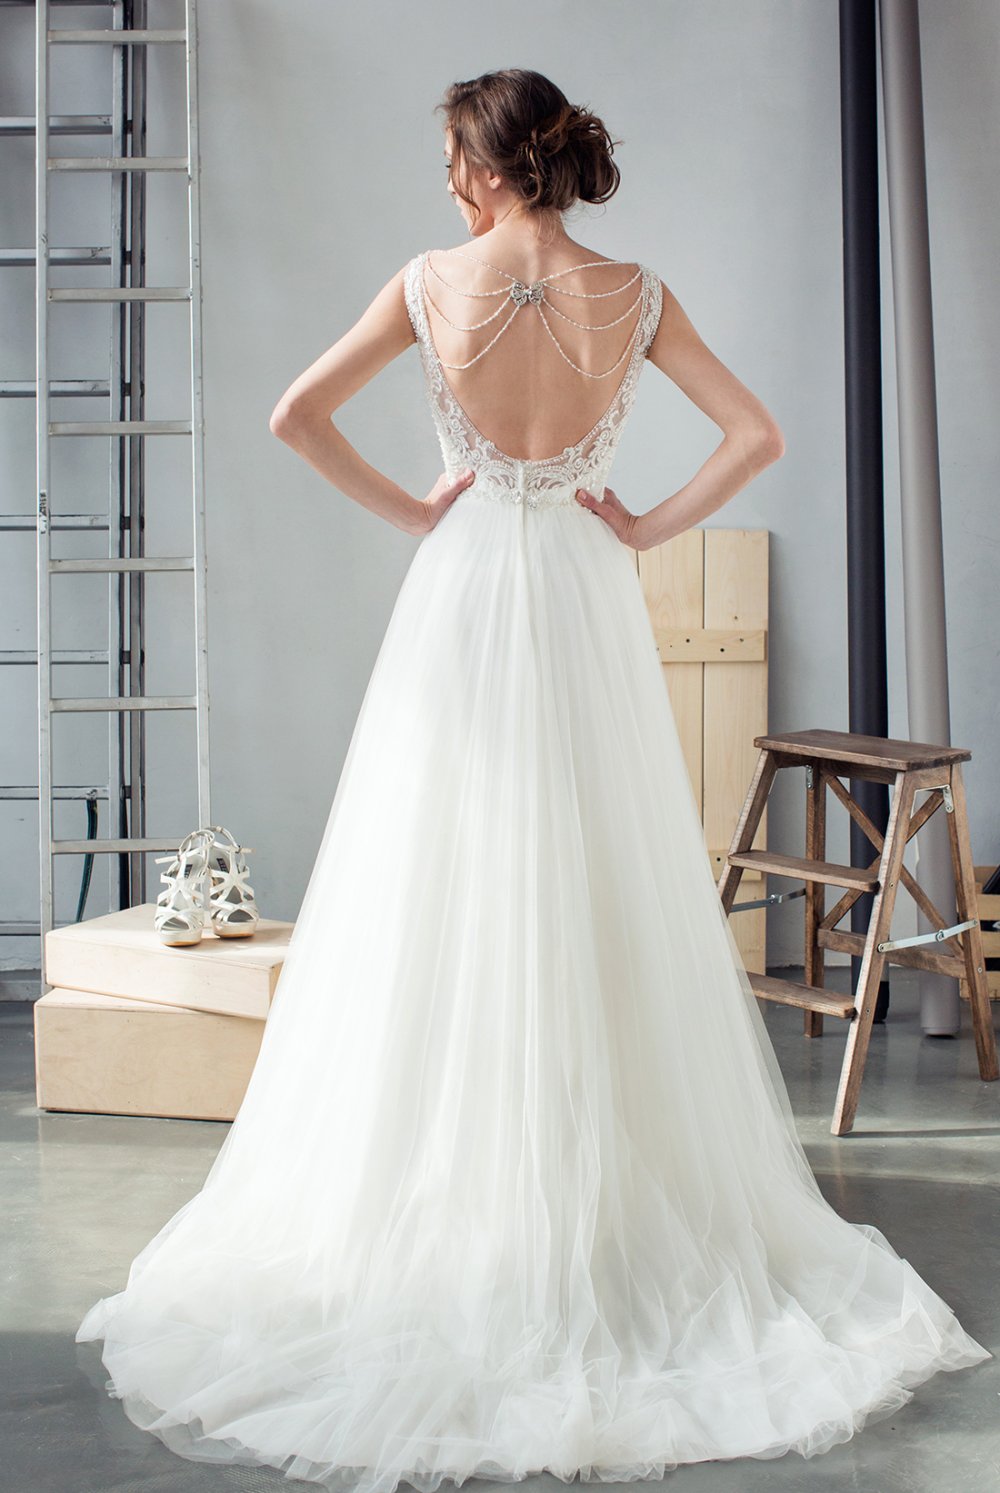 Свадебное платье с красивой спинкой, украшенной брошью в виде бабочки